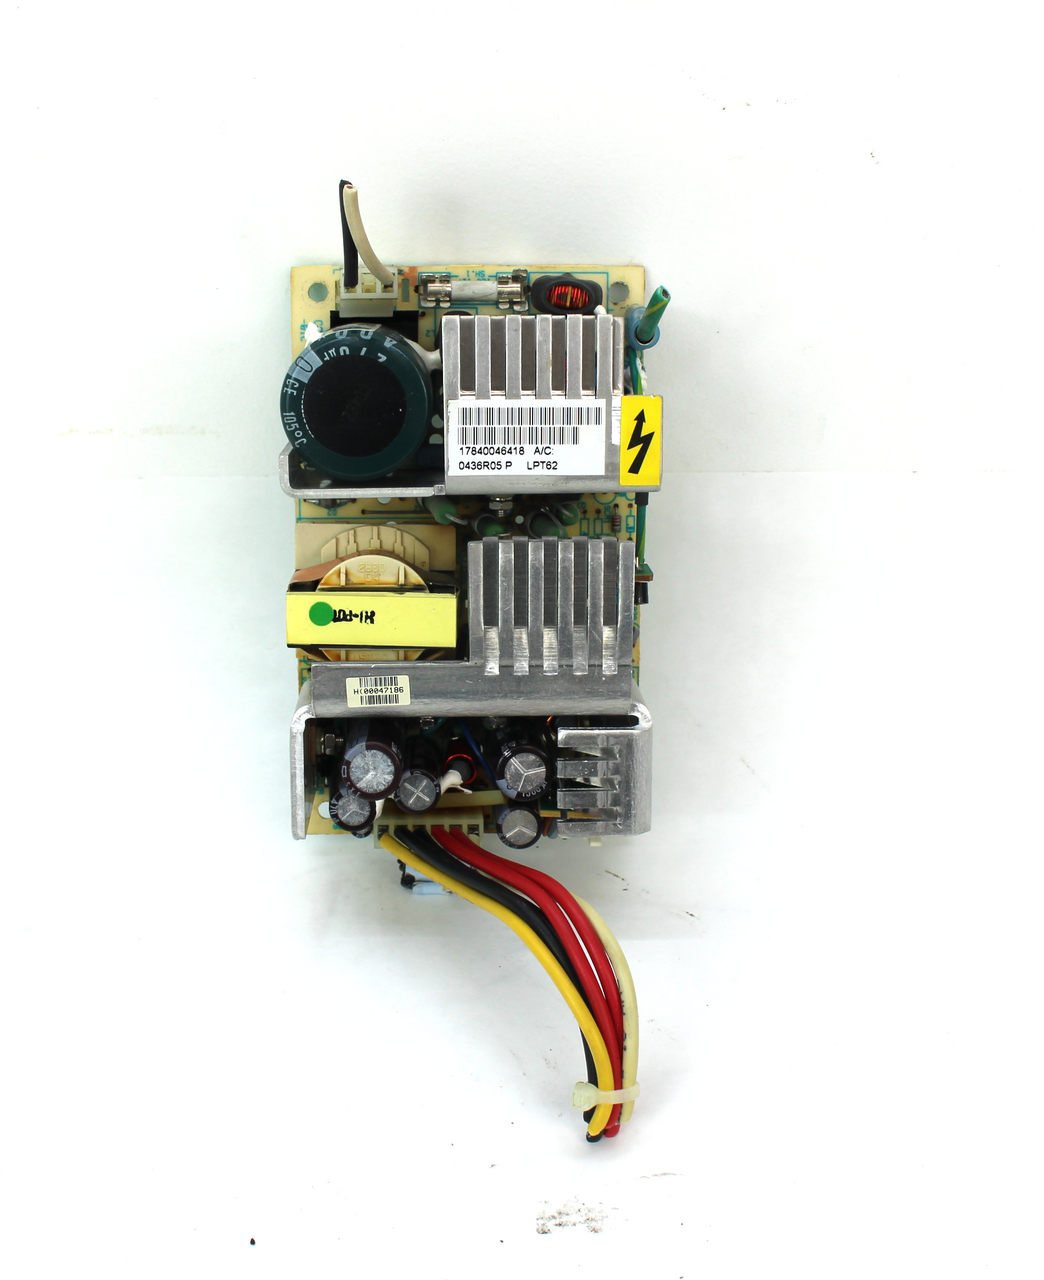 Astec LPT62, 0436R05P Power Supply Module Board